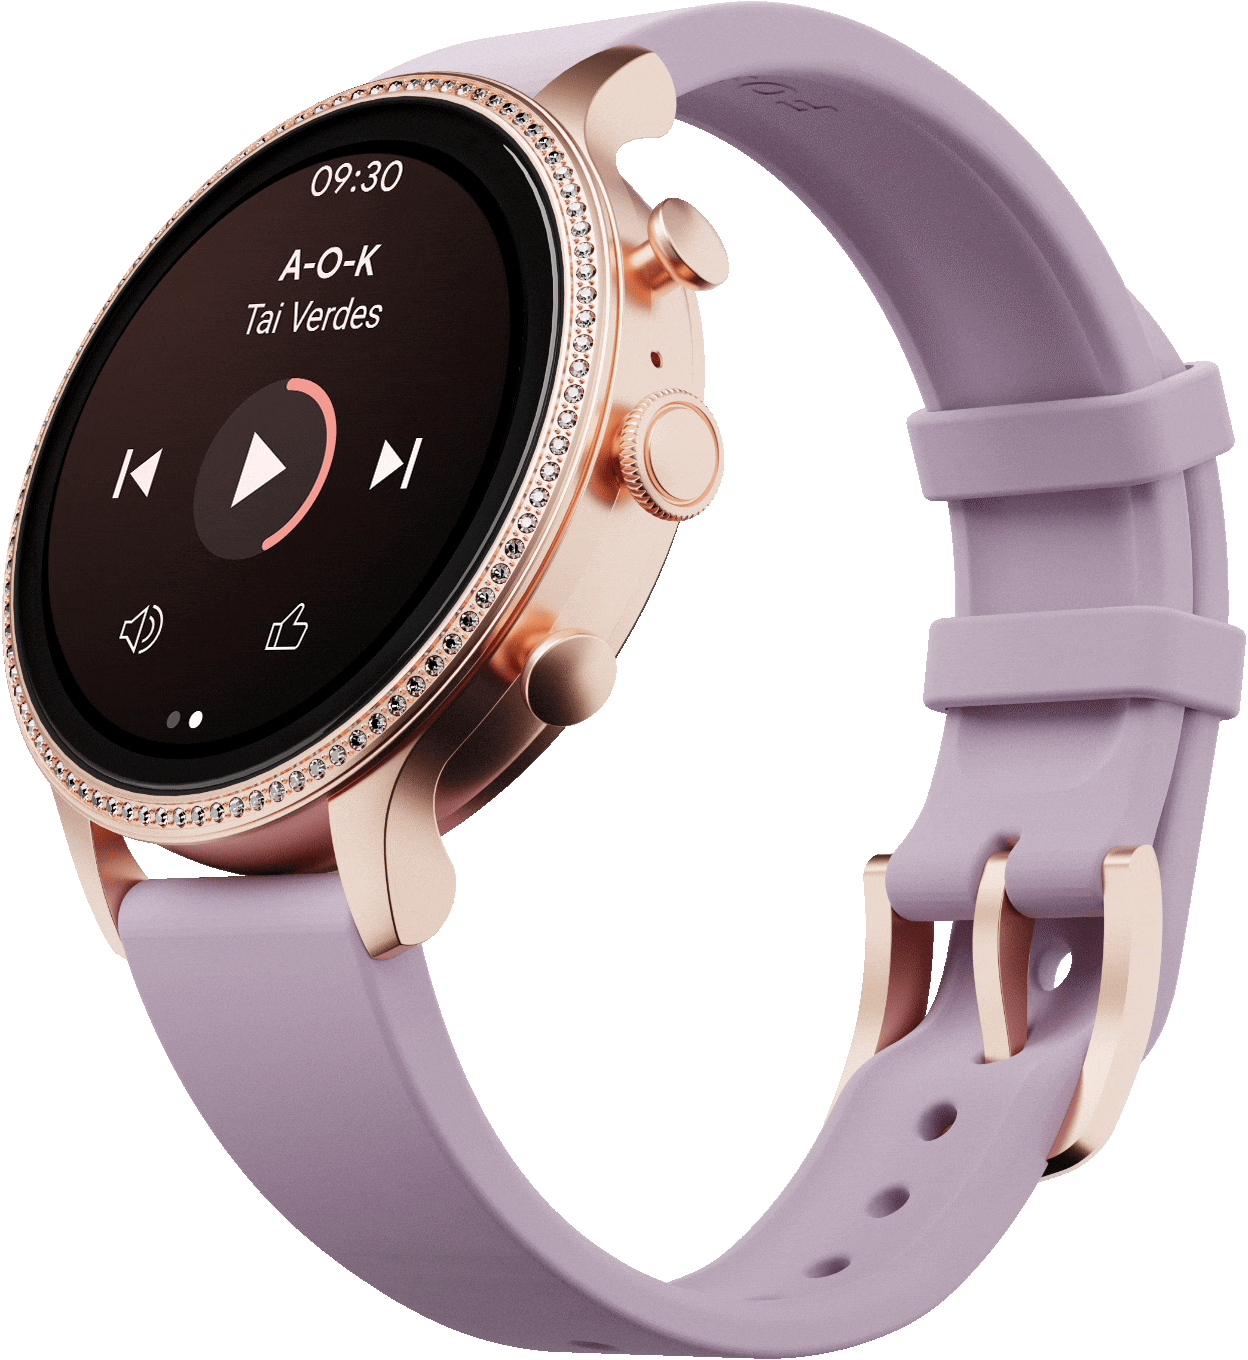 Une montre intelligente Gen 6 avec un bracelet en silicone mauve, une chanson en cours de lecture sur le cadran et des icônes en forme de notes de musique.